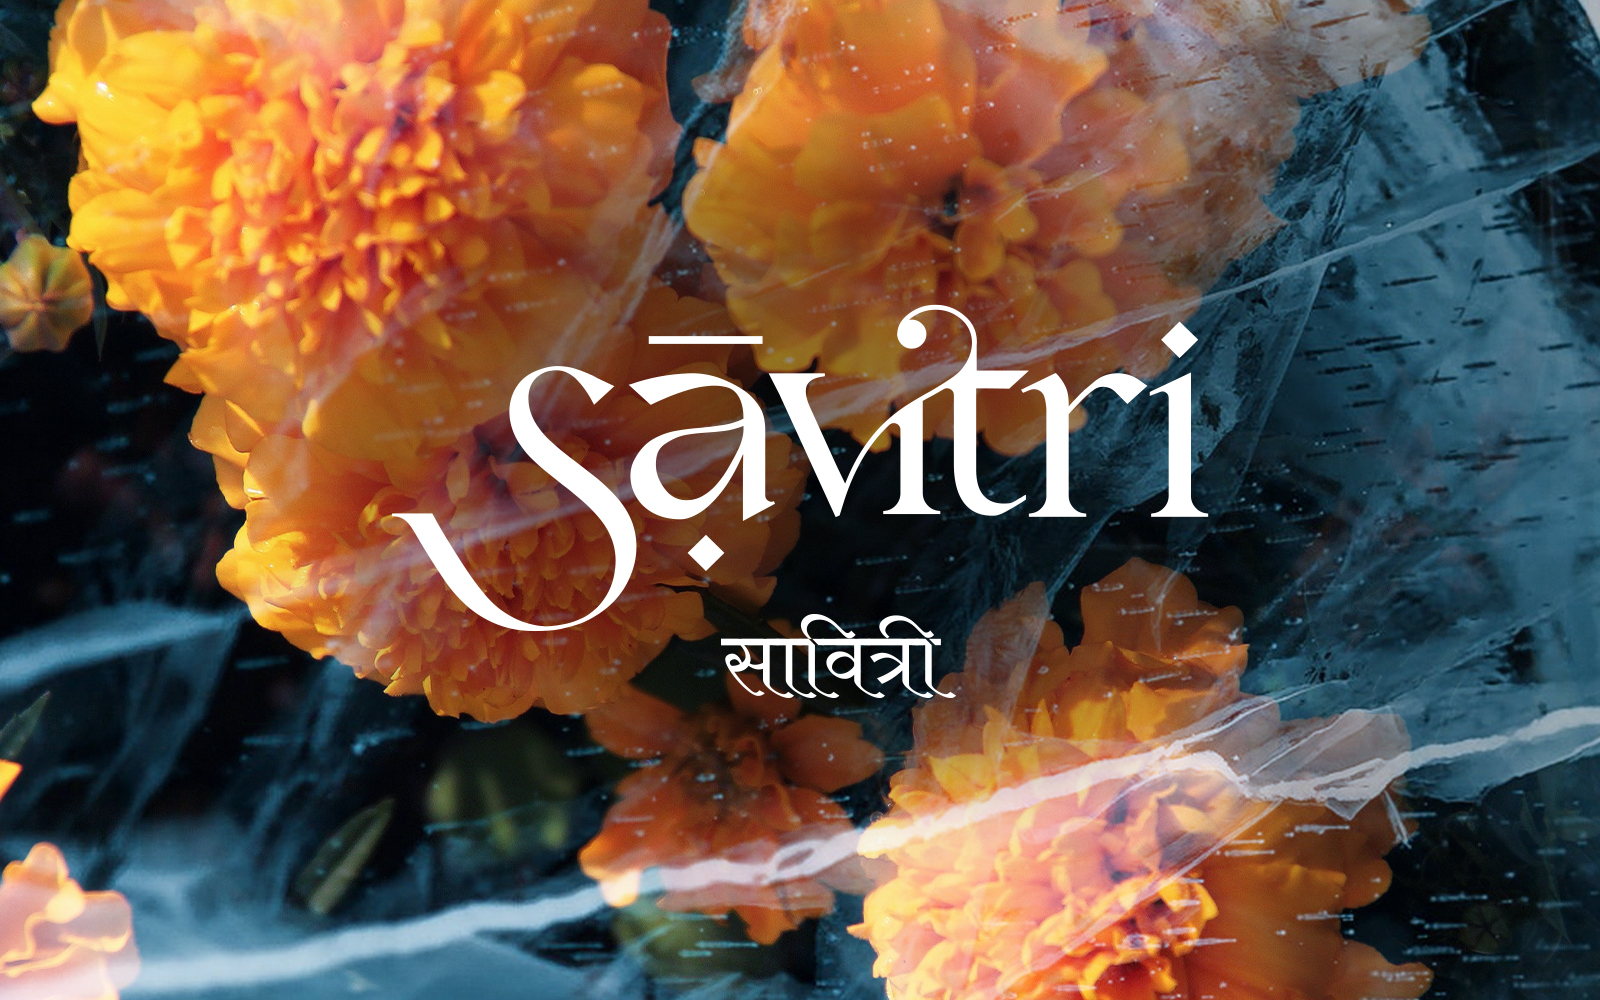 Savitri Banner ATG